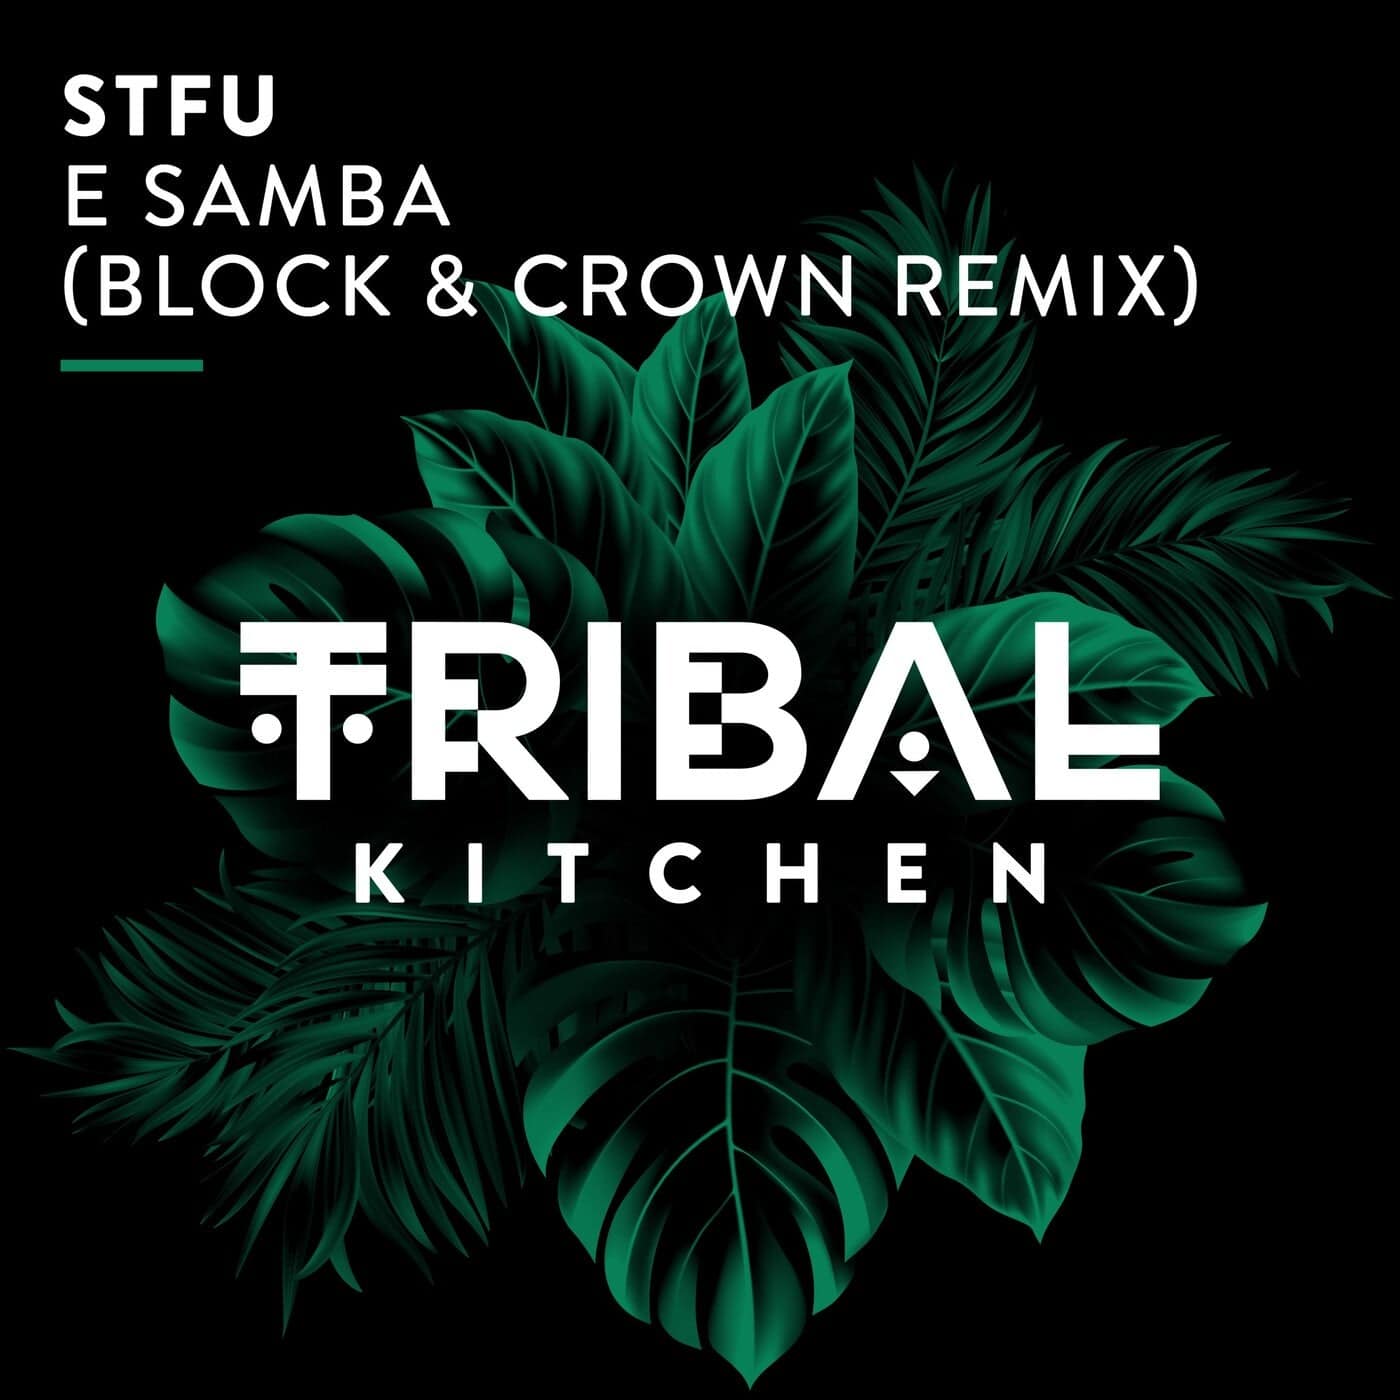 image cover: STFU - E Samba (Block & Crown Remix) on Tribal Kitchen